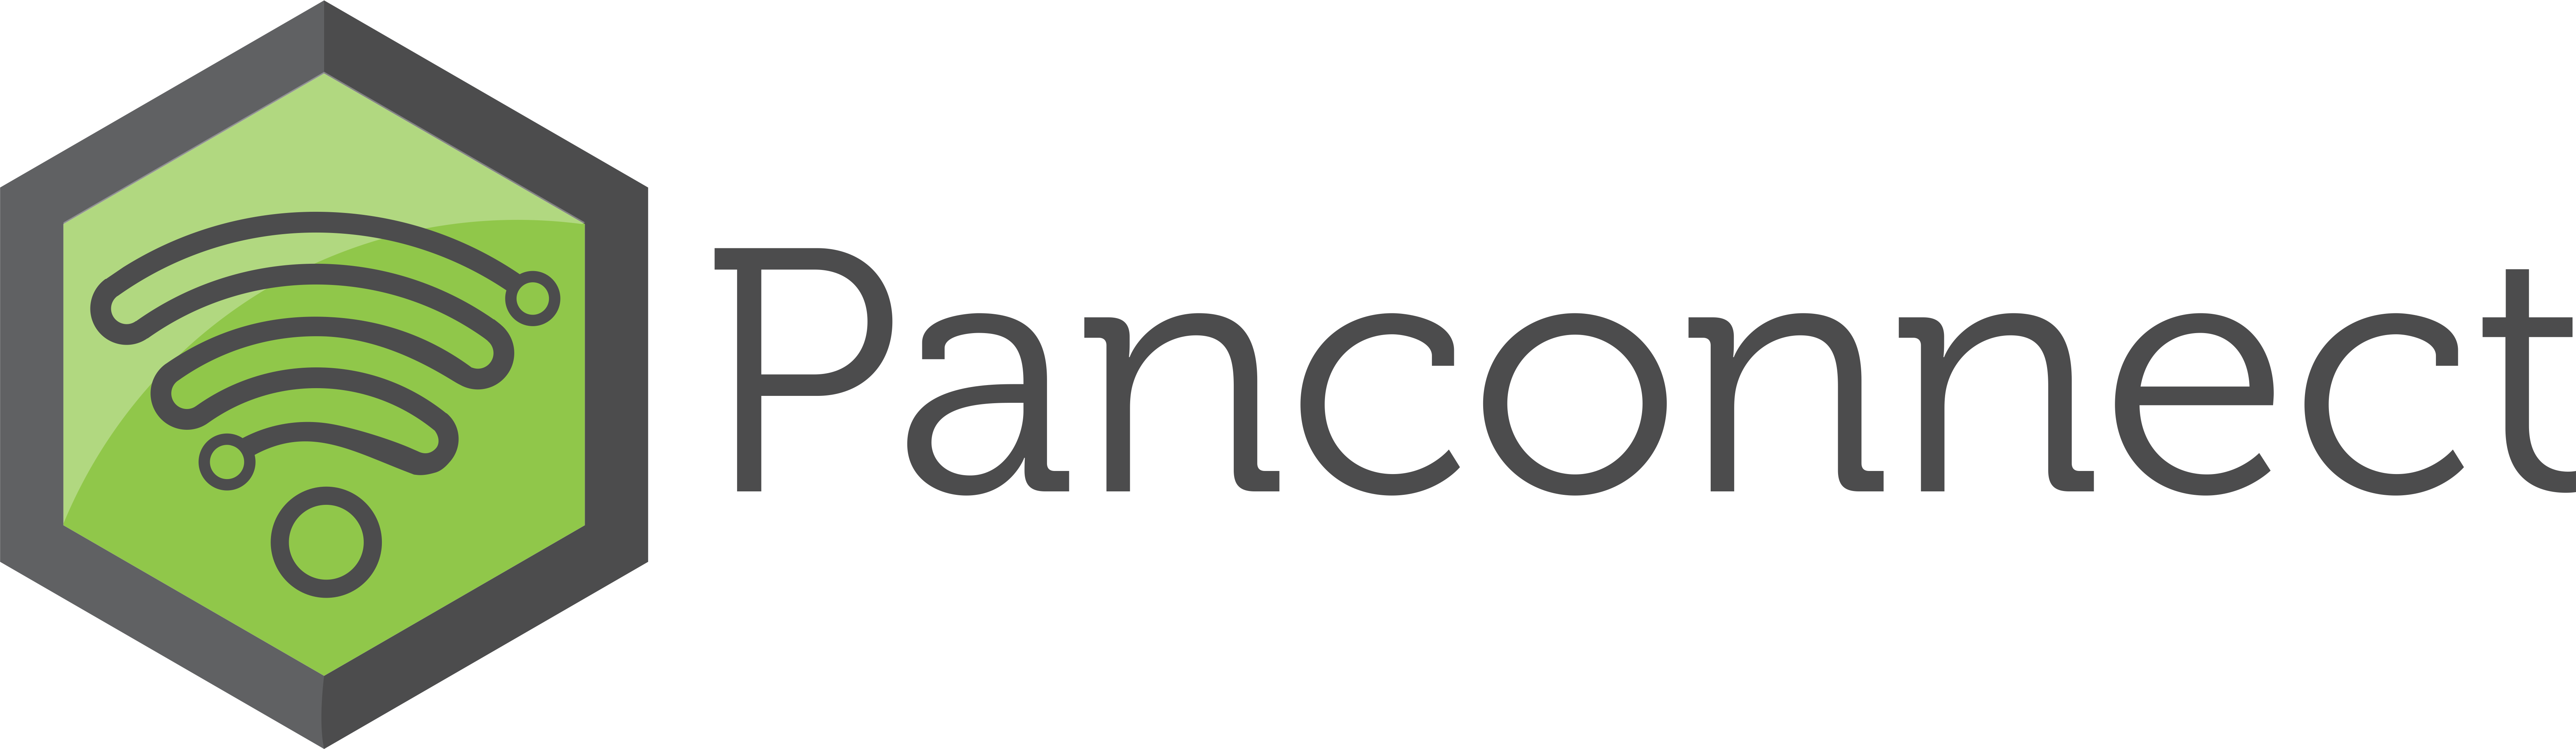 Panconnect